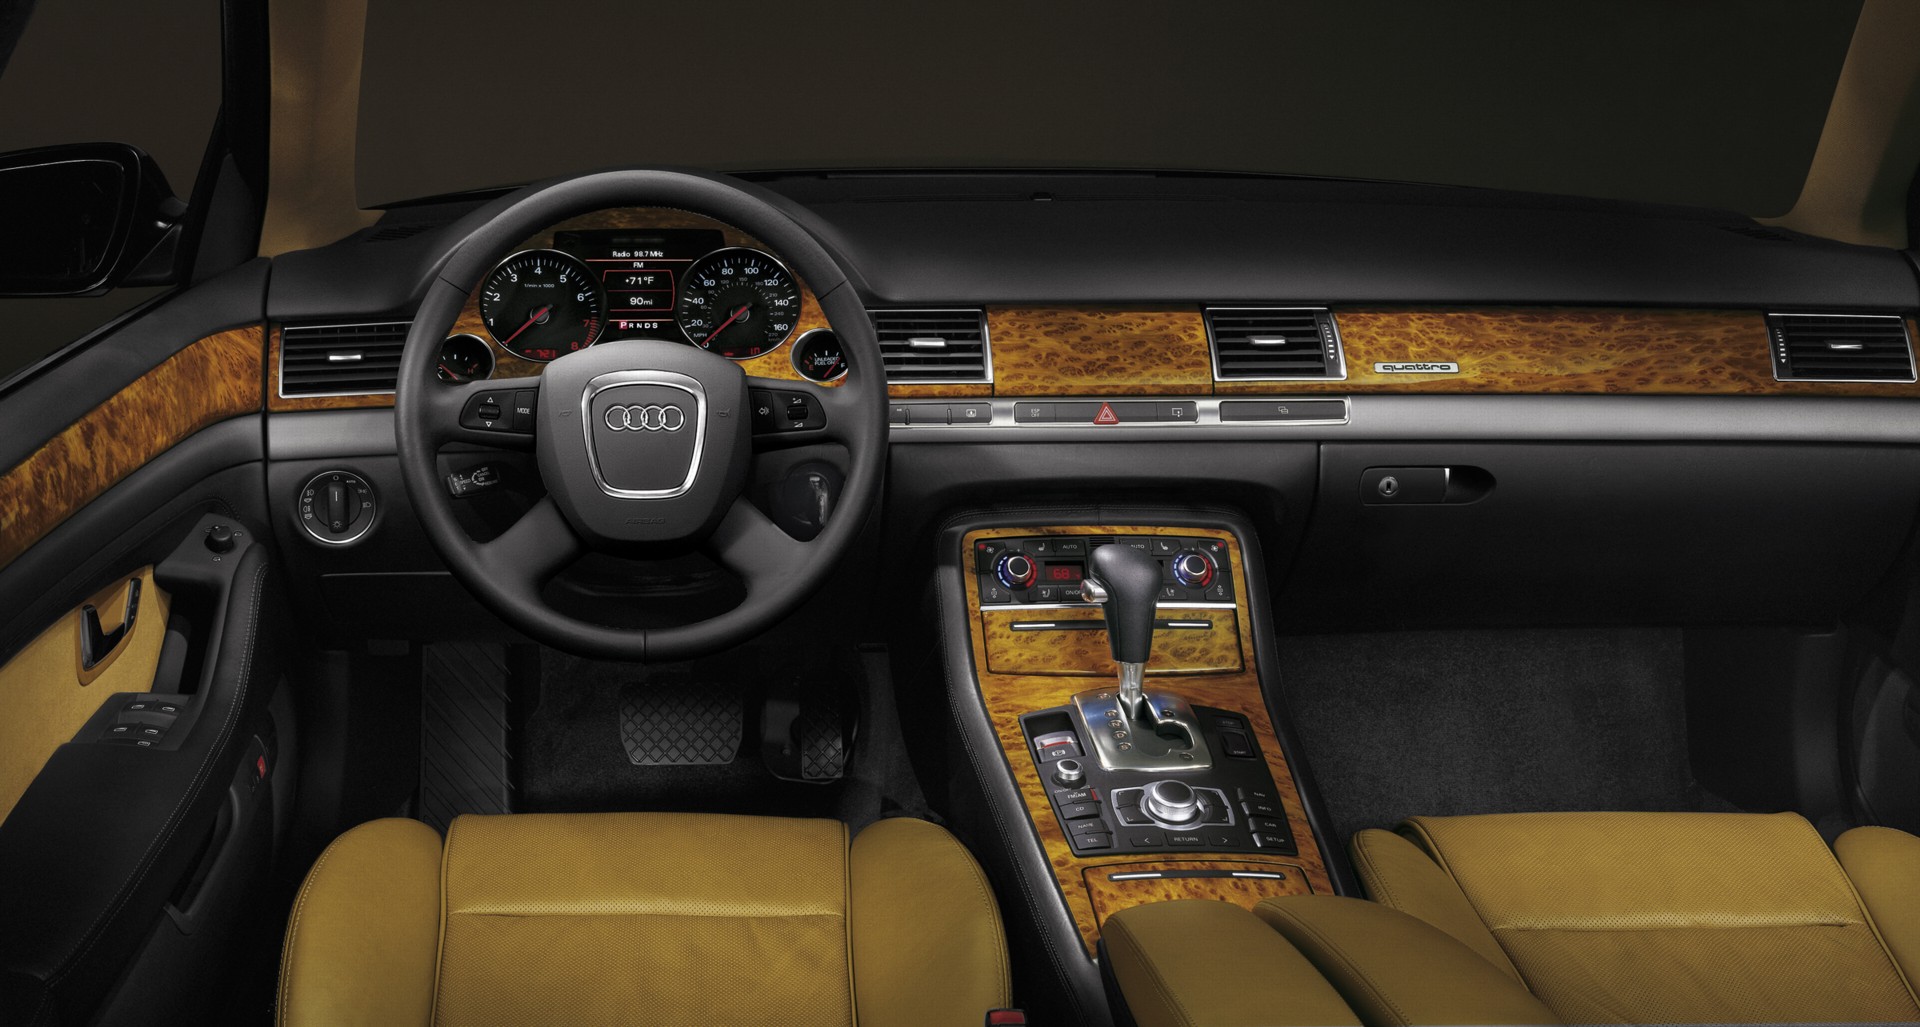 Ауди а8 3.3. Audi a8 d3 салон. Audi a8 d3 Exclusive. Audi a8 d3 w12 салон. Audi a8 2008 салон.